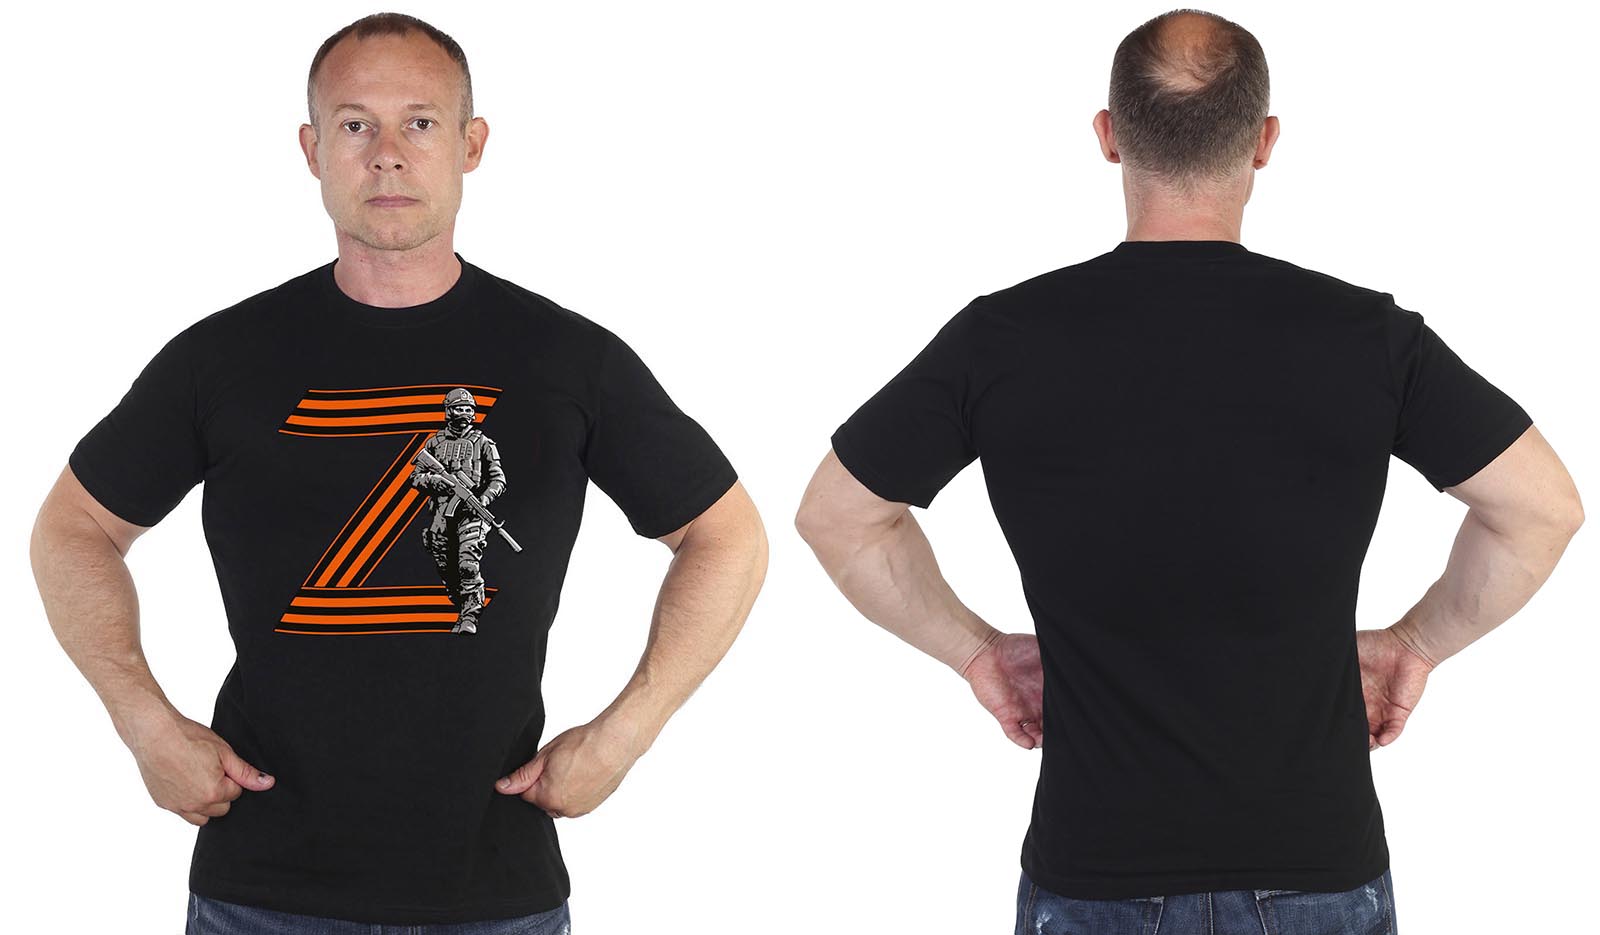 Мужские футболки и другая одежда с символикой Z